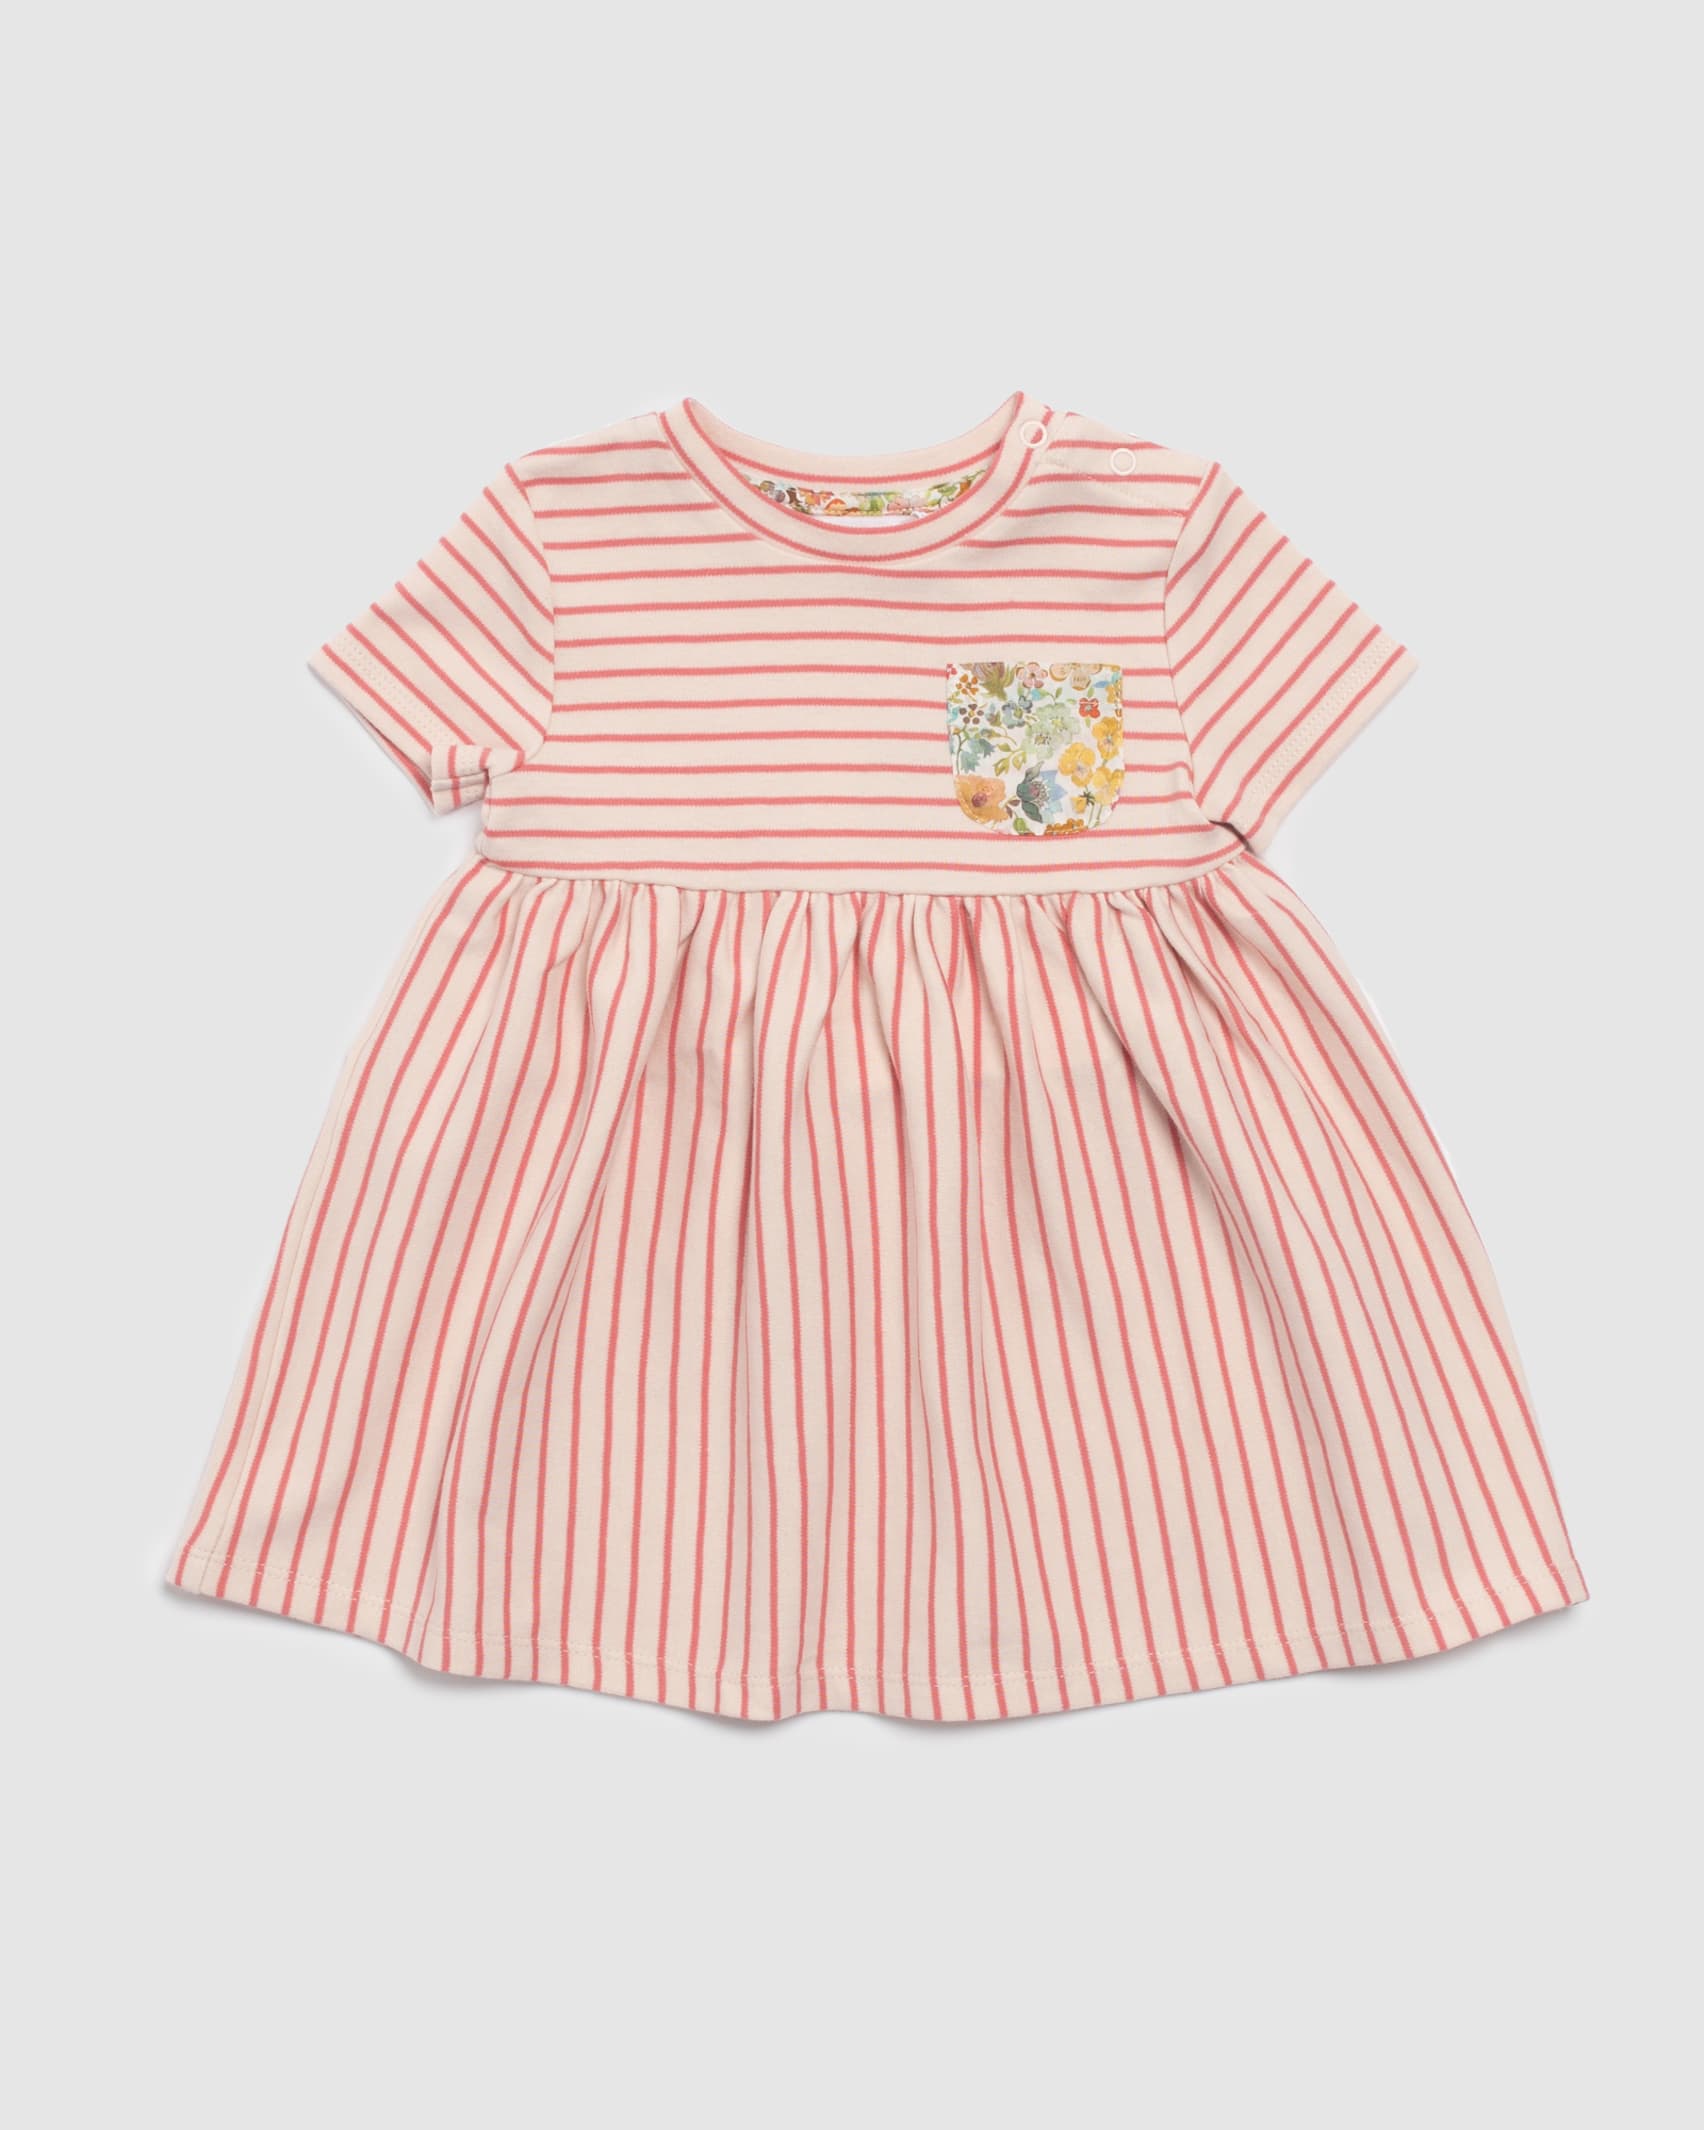 Lola Stripe Jersey Baby Dress in PINK MULTI